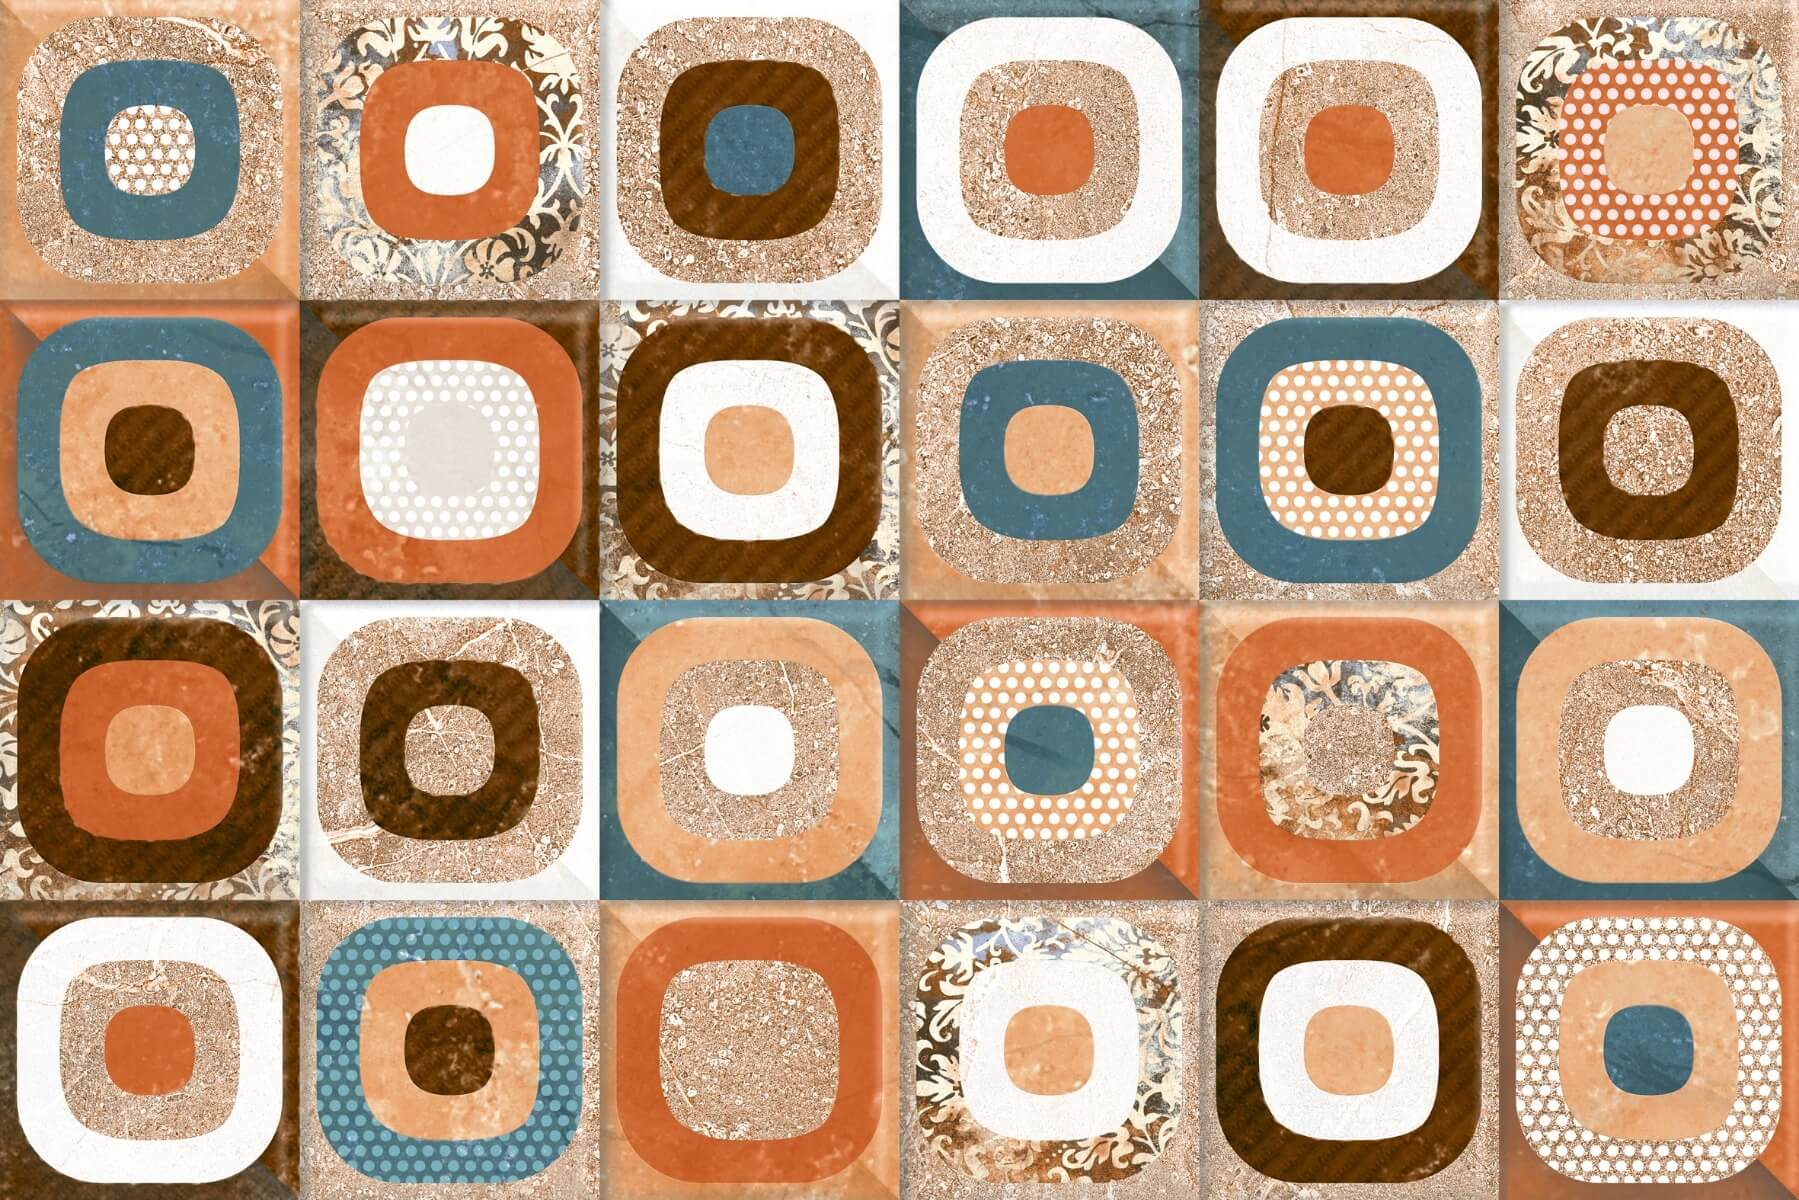 Texture Tiles for Bathroom Tiles, Kitchen Tiles, Accent Tiles